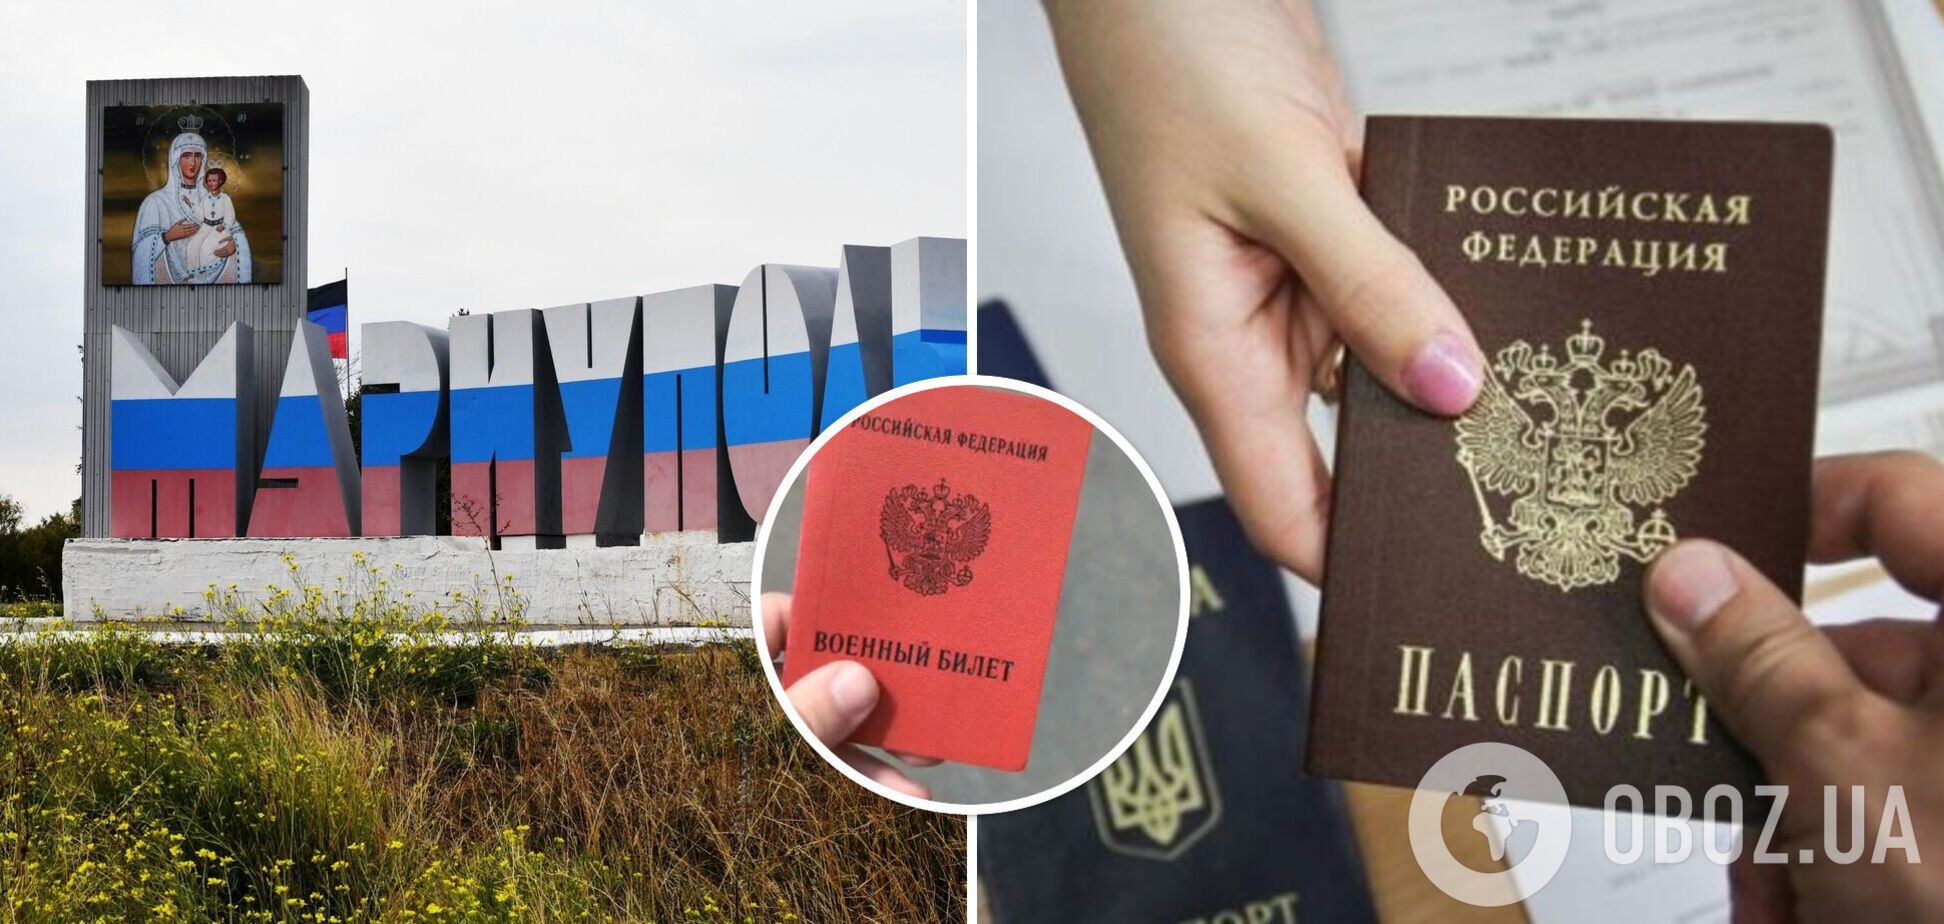 В оккупированном Мариуполе мужчинам вместе с российским паспортом выдают повестку в военкомат: защищать 'русский мир'